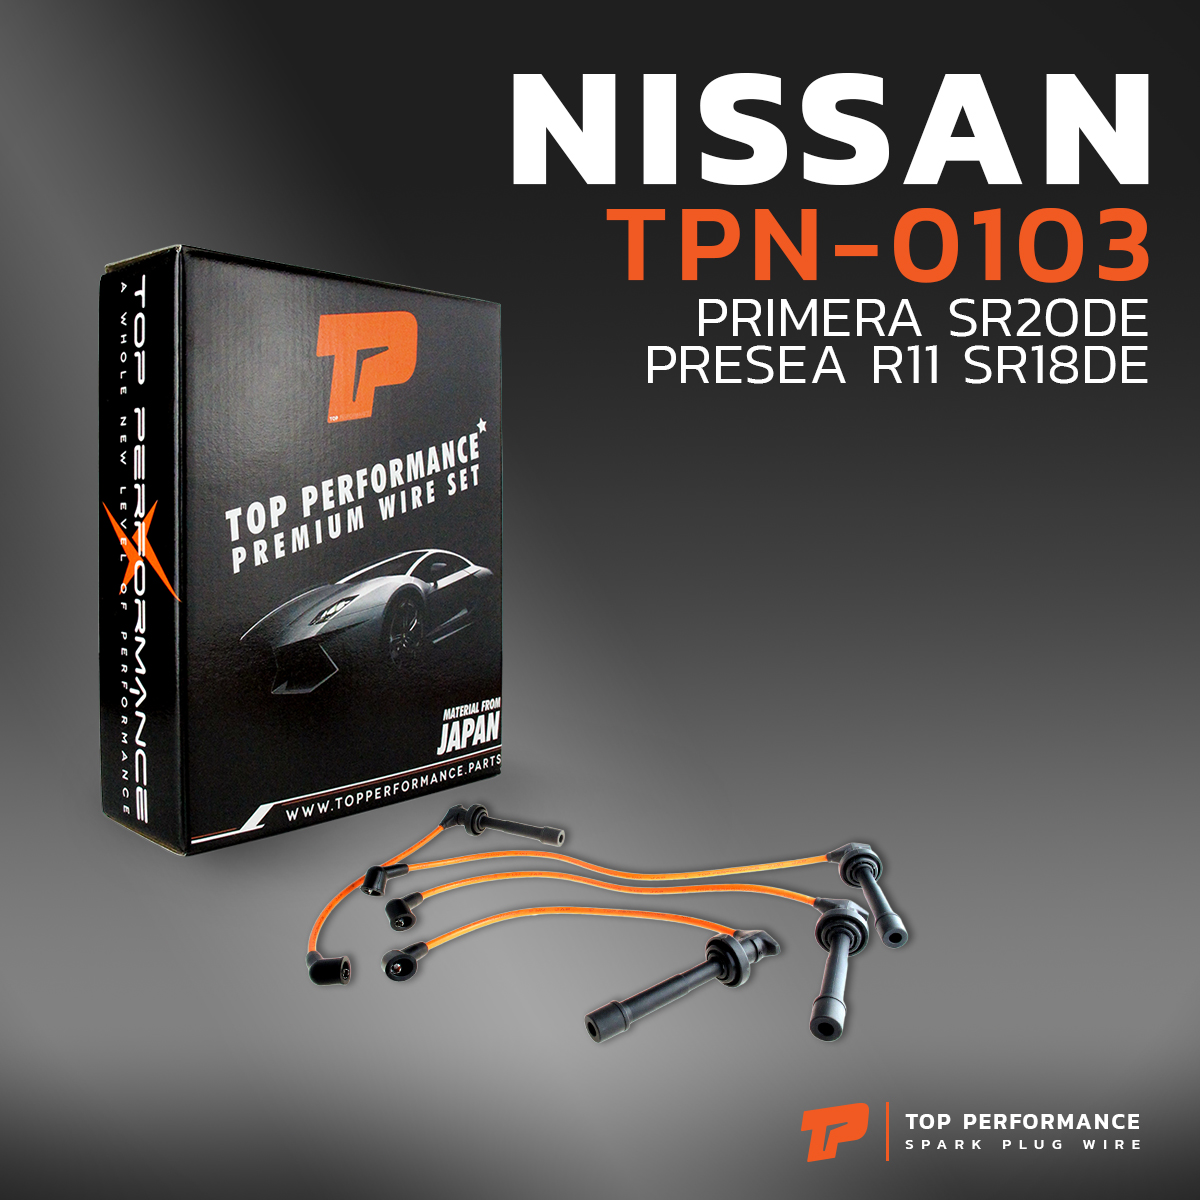 สายหัวเทียน NISSAN PRIMERA SR20DE / PRESEA R11 SR18DE - TOP PERFORMANCE MADE IN JAPAN - TPN-0103 - นิสสัน พรีเซีย พรีมีร่า